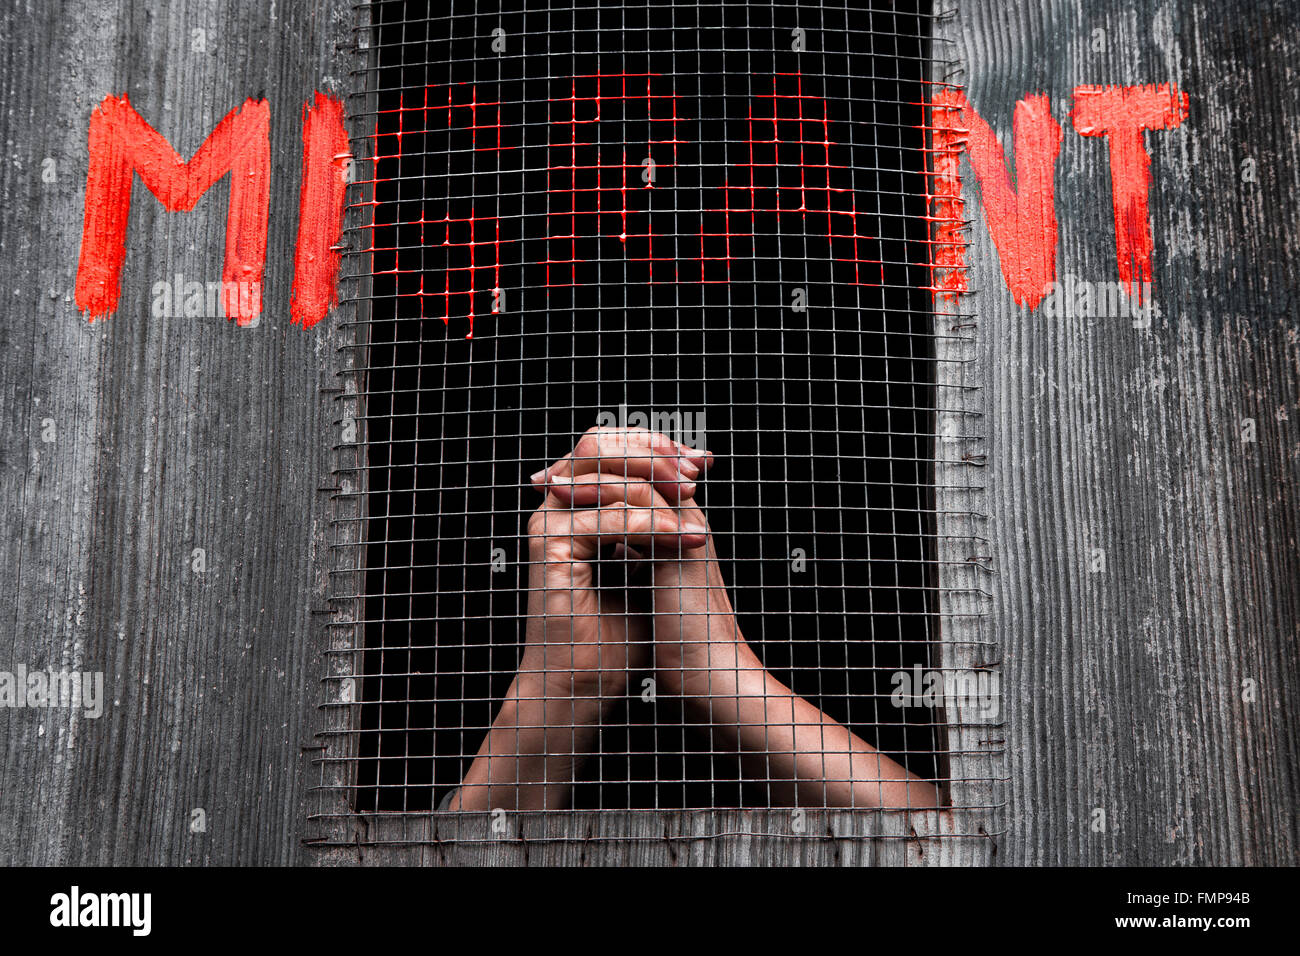 Les mains derrière les barreaux, les graffitis lecture soutien aux réfugiés, migrants Banque D'Images